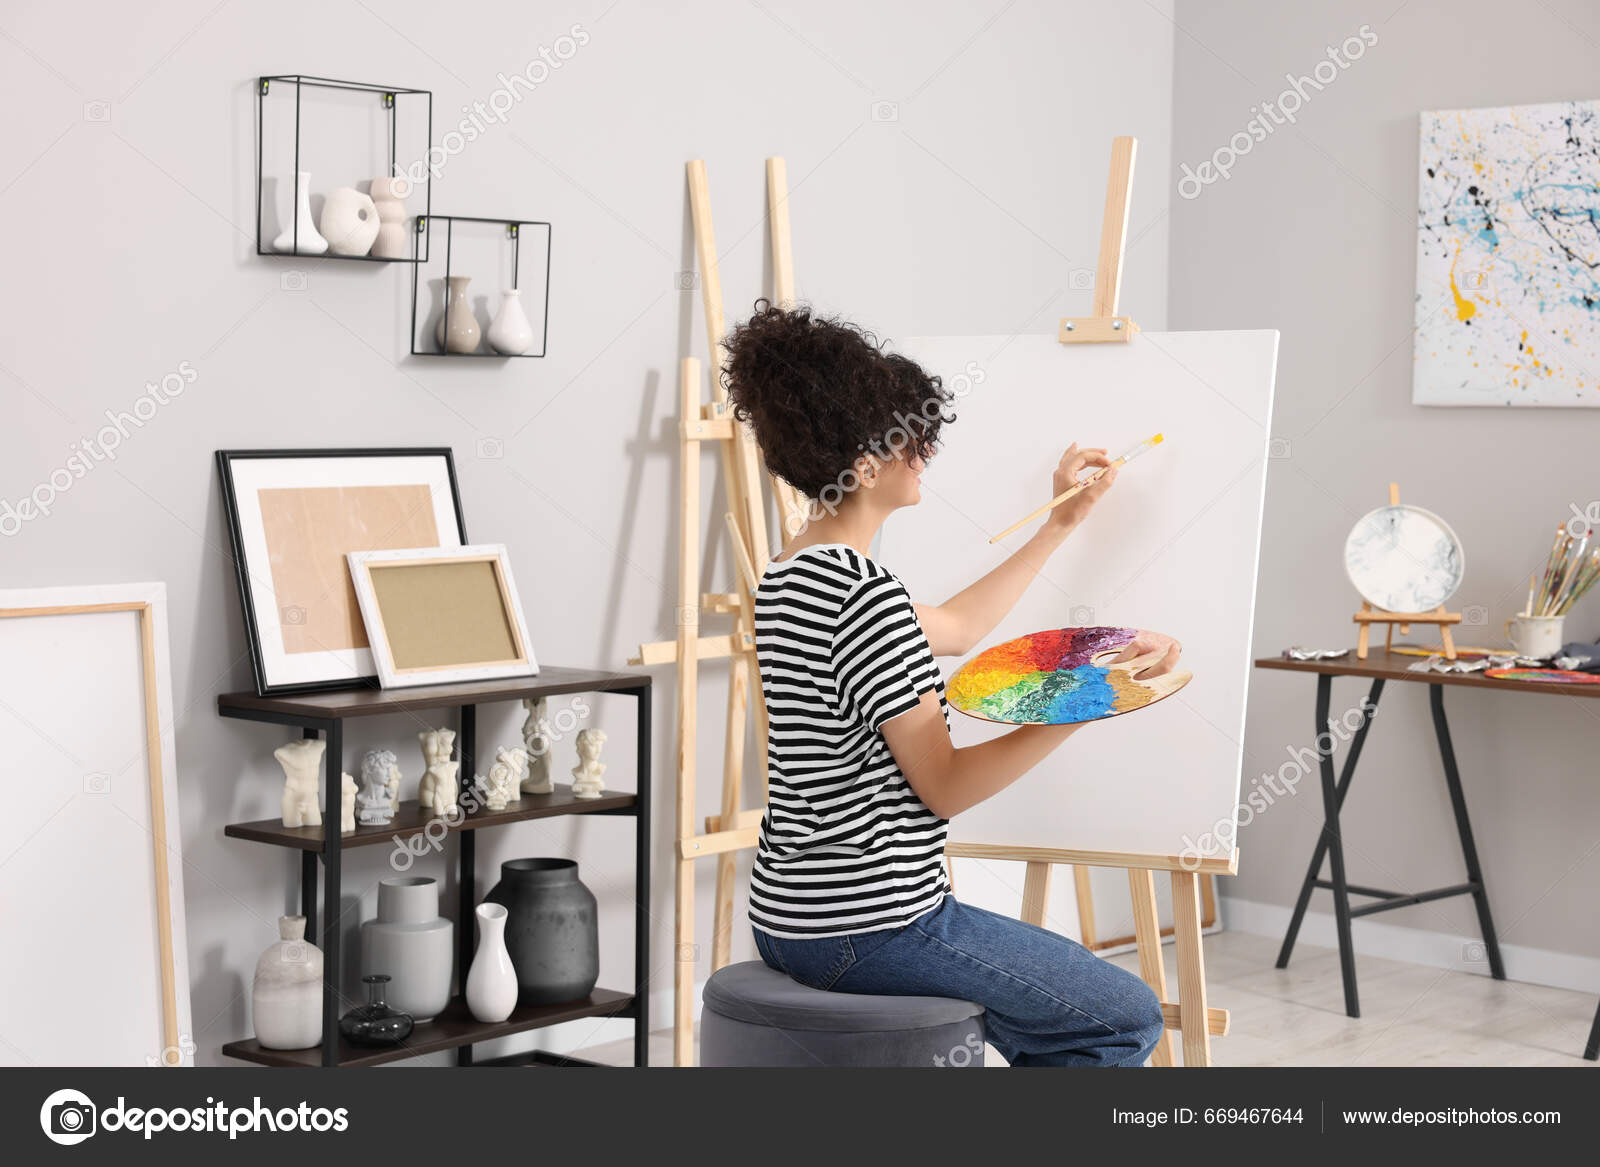 Artista feminina pintando imagens em tela pintor com paleta de